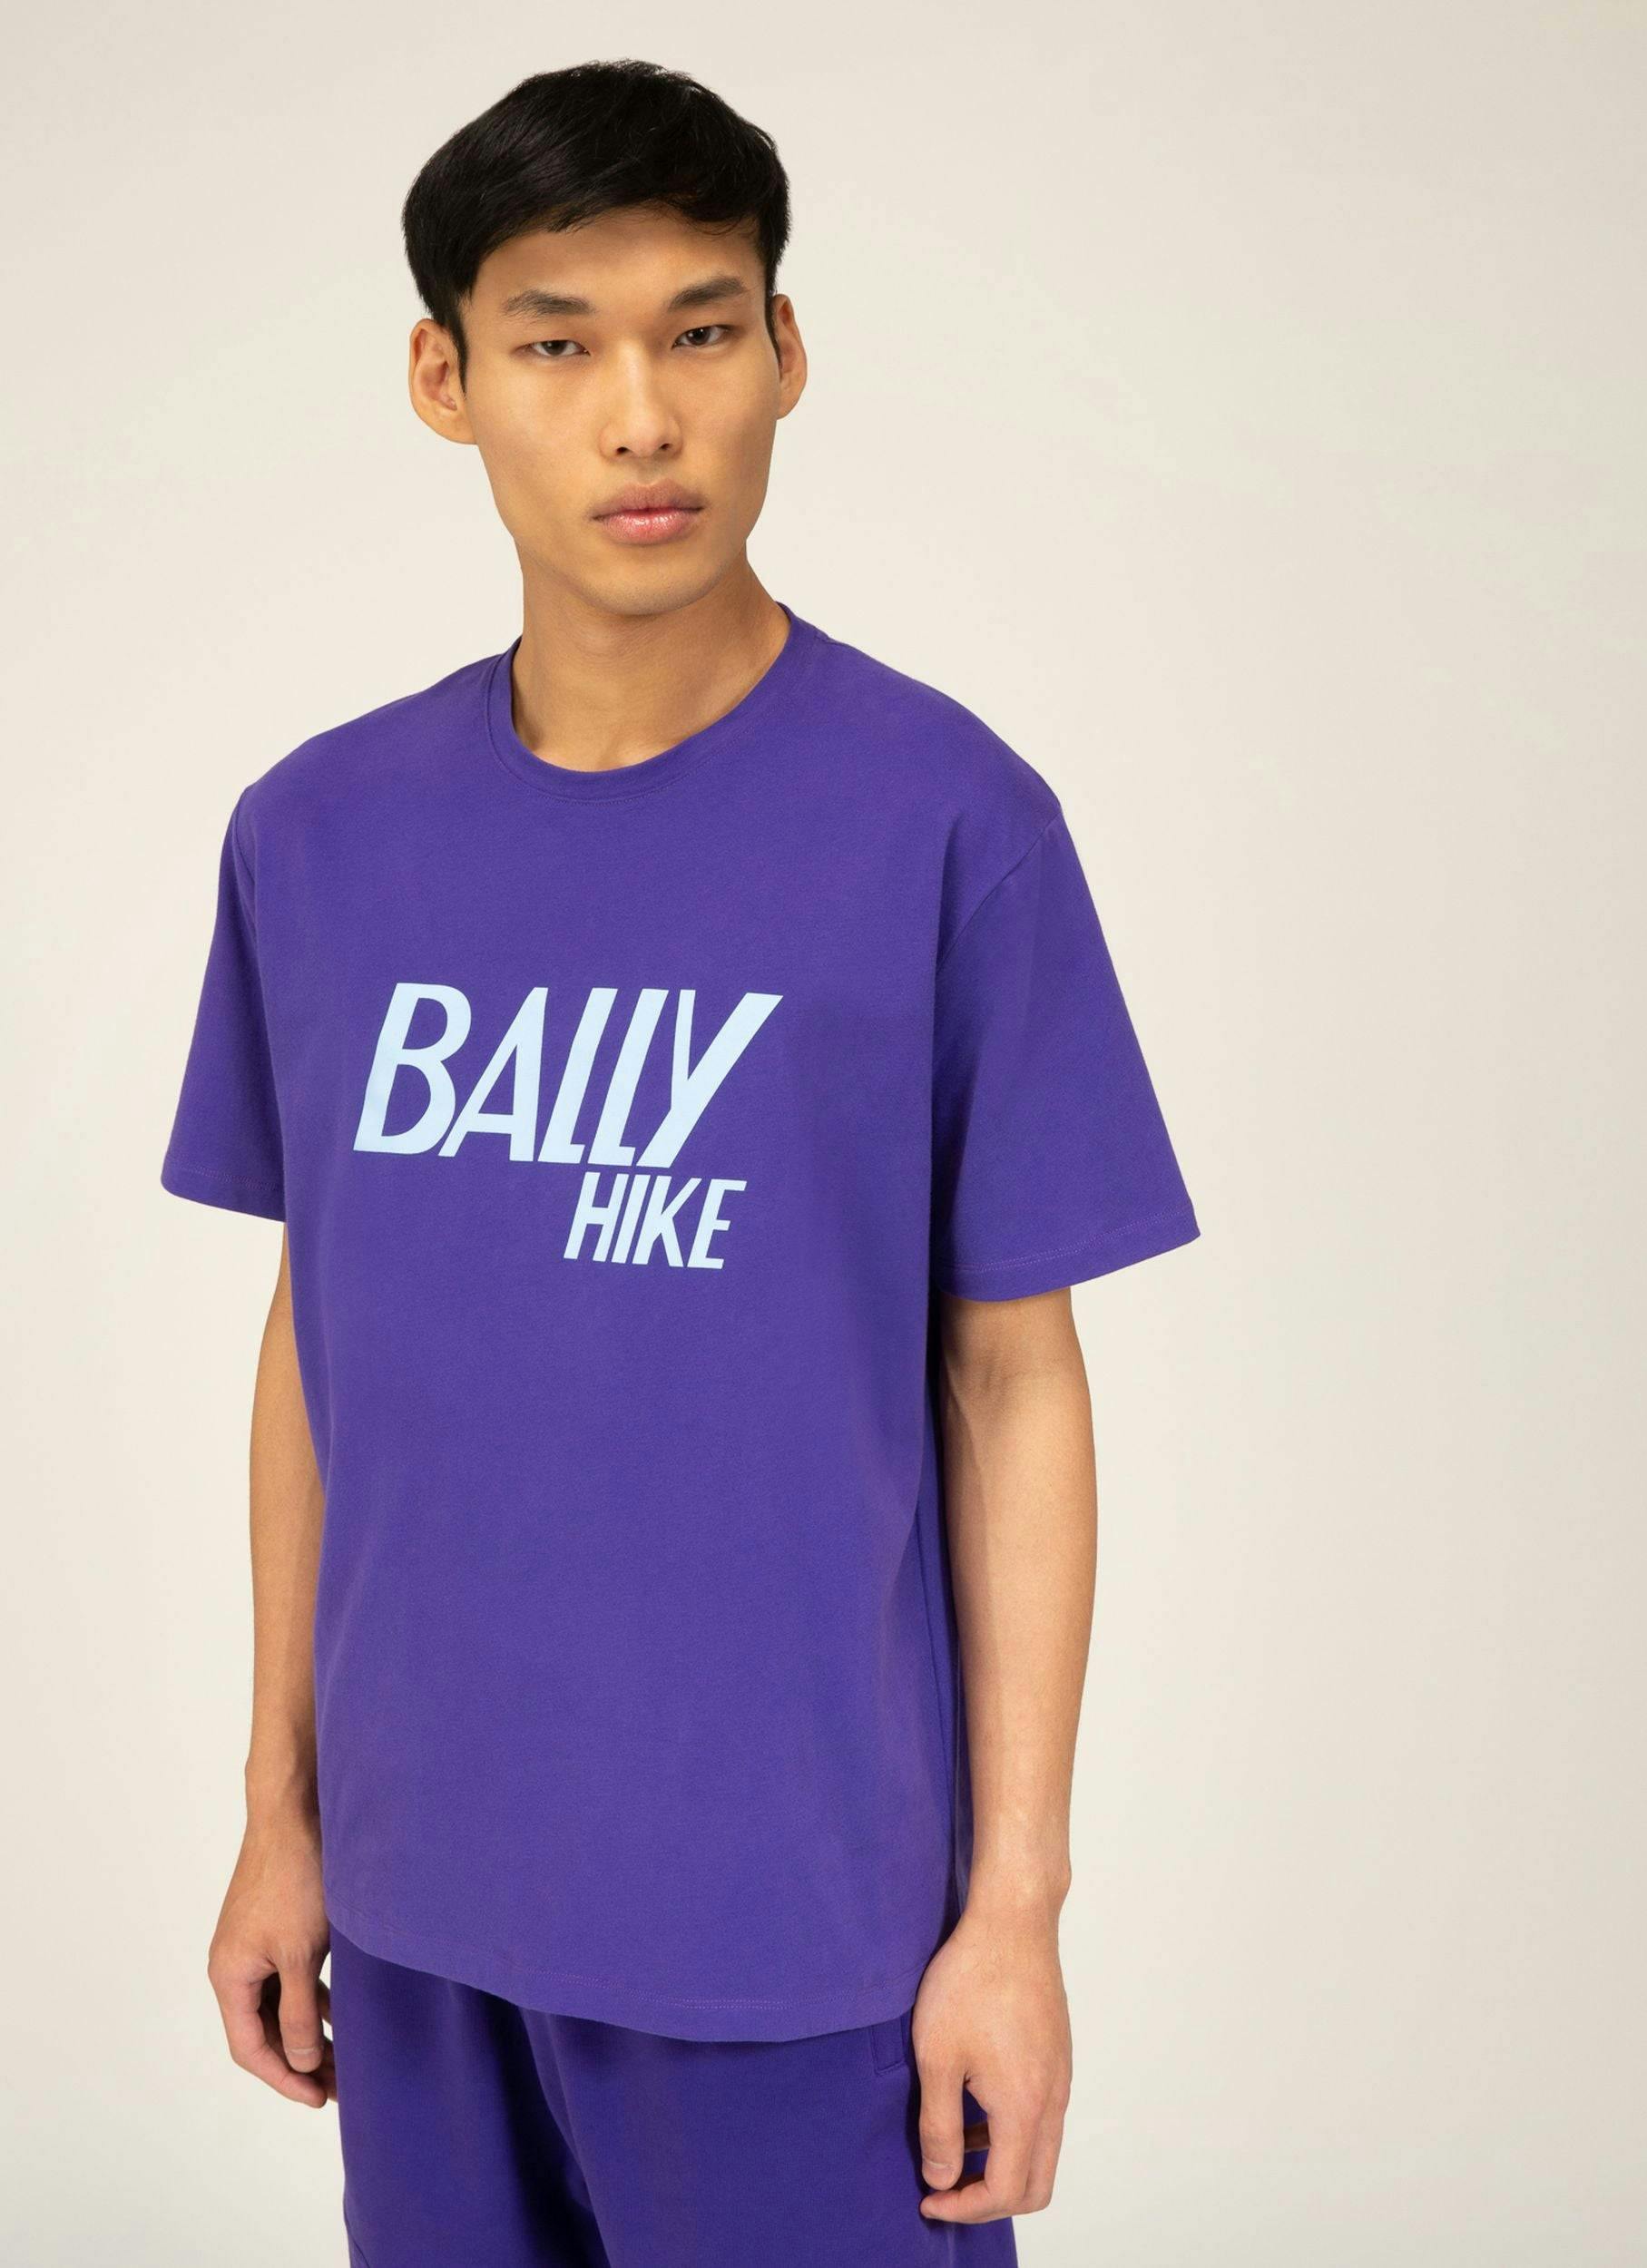 Bally Hike 9 Haut En Coton Bio Violet - Homme - Bally - 02